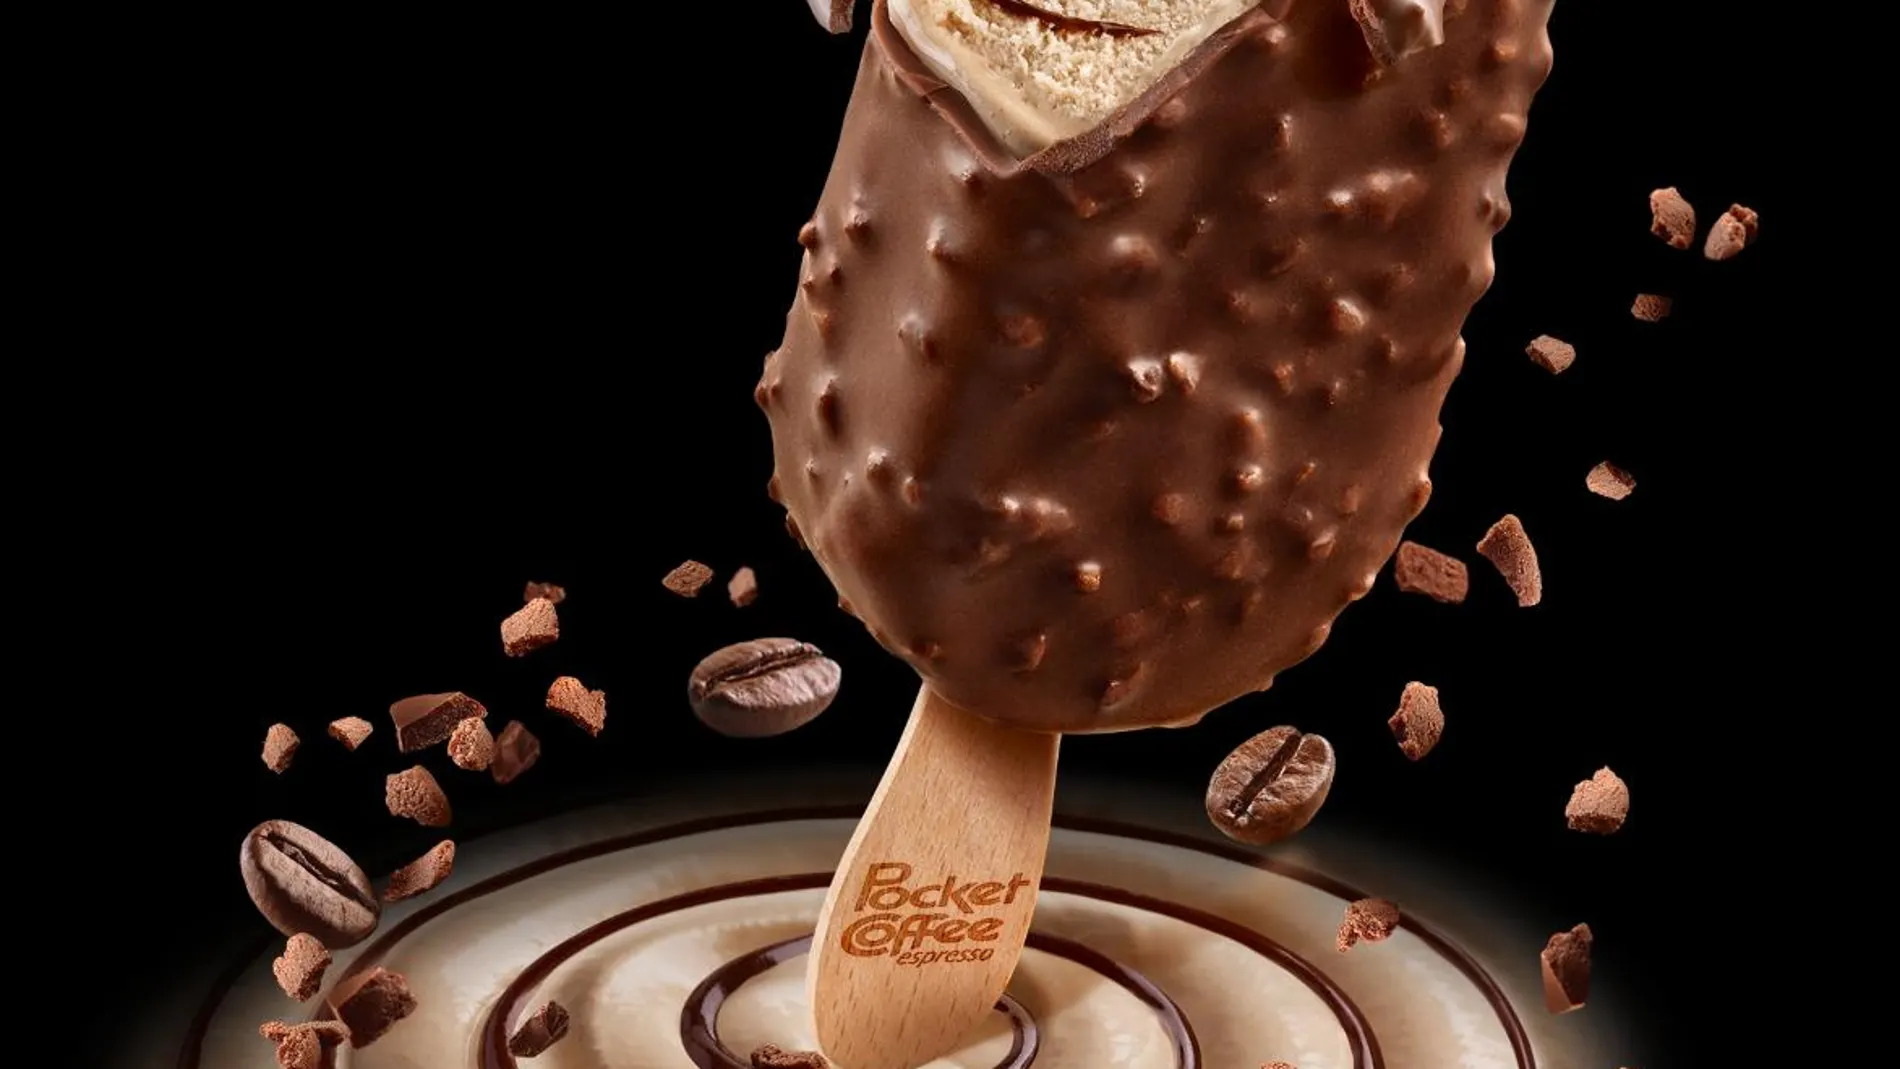 Pocket Coffee, nuevos helados de Ferrero